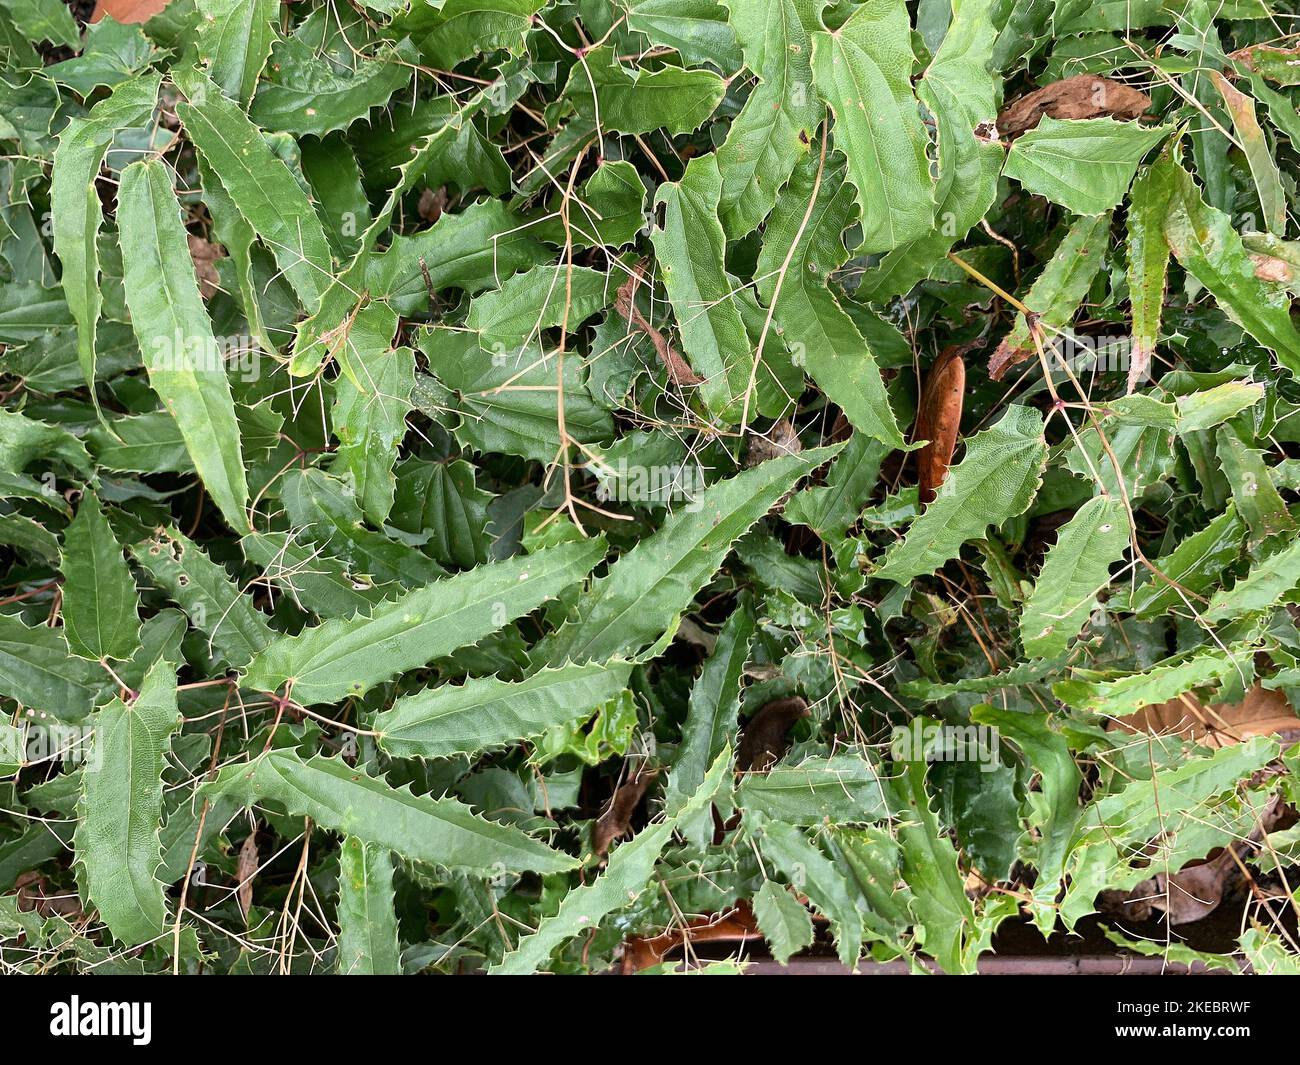 Gros plan sur les feuilles vertes avec les bords dentés de la plante herbacée vivace de jardin Epimedium Spine Tingler. Banque D'Images